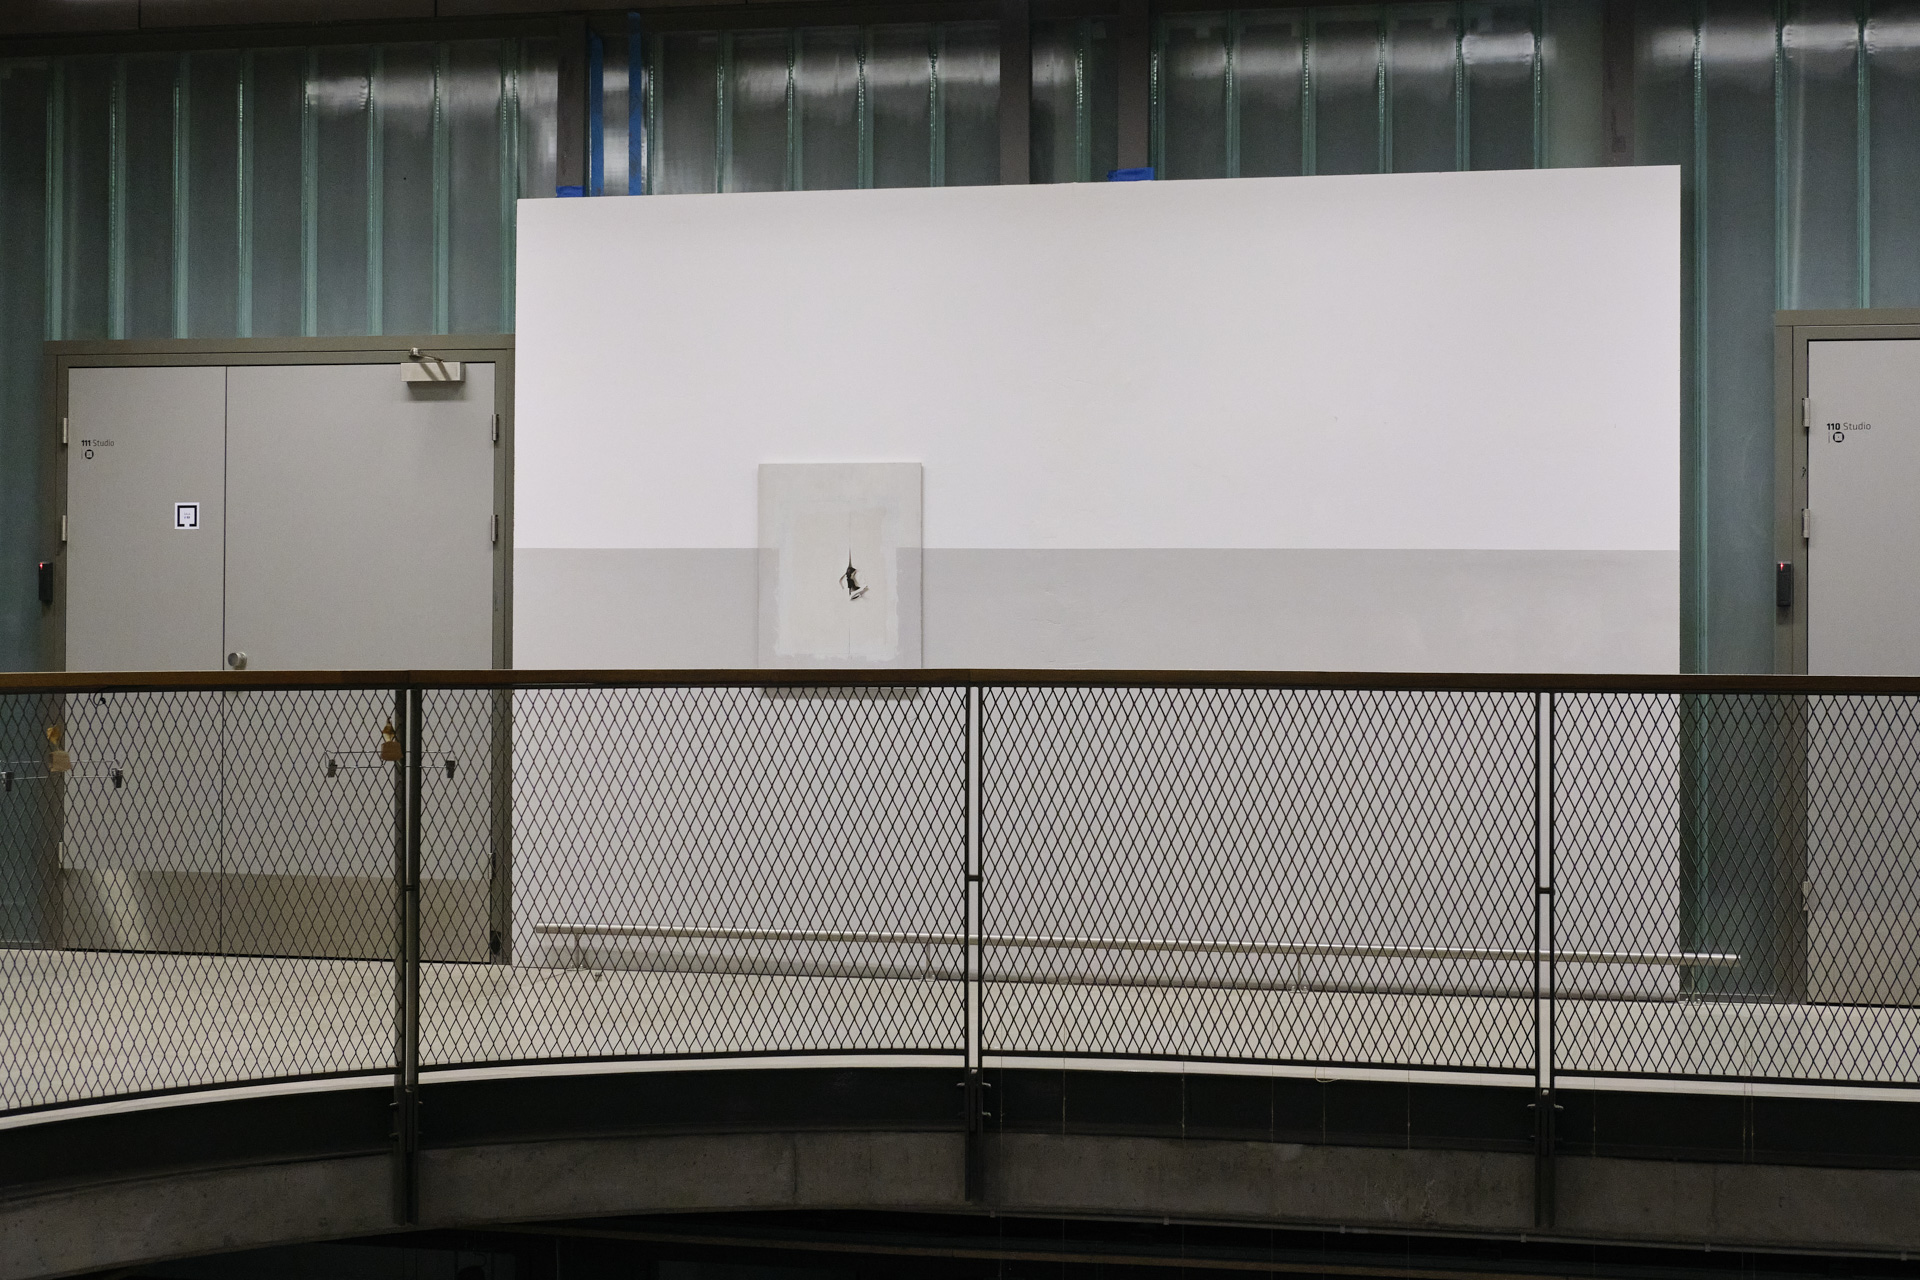 Fotodokumentacja dwóch instalacji przestrzennych, w których spotykają się motywy przefotografowane i wydrukowane przez autora, z materiami tj. ściana z karton gipsu, płyta OSB. Motywy przedstawiają dziurę w ścianie oraz plakat zdarty z płyty OSB.